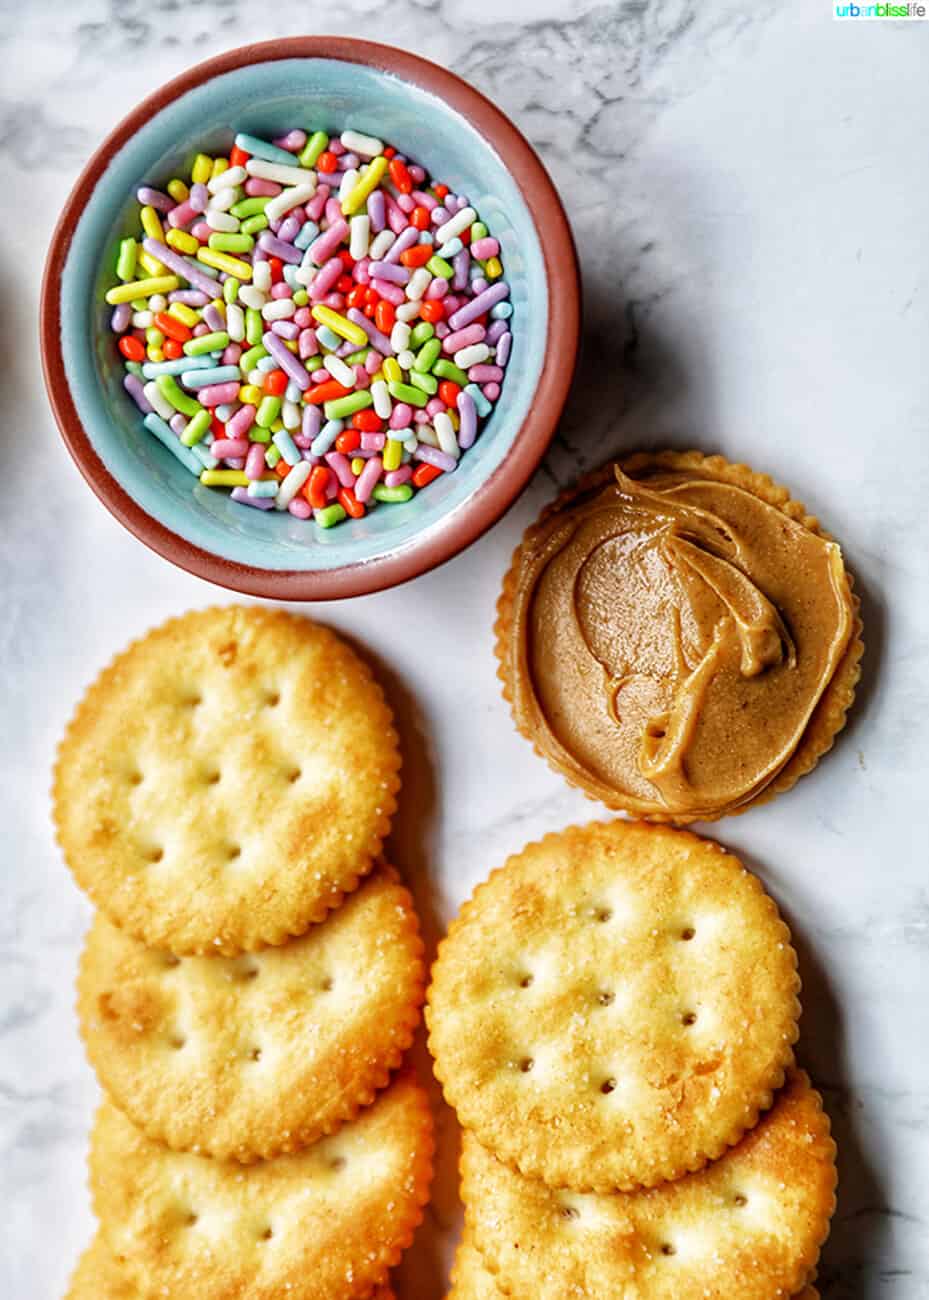 ingredients for Ritz cracker cookies